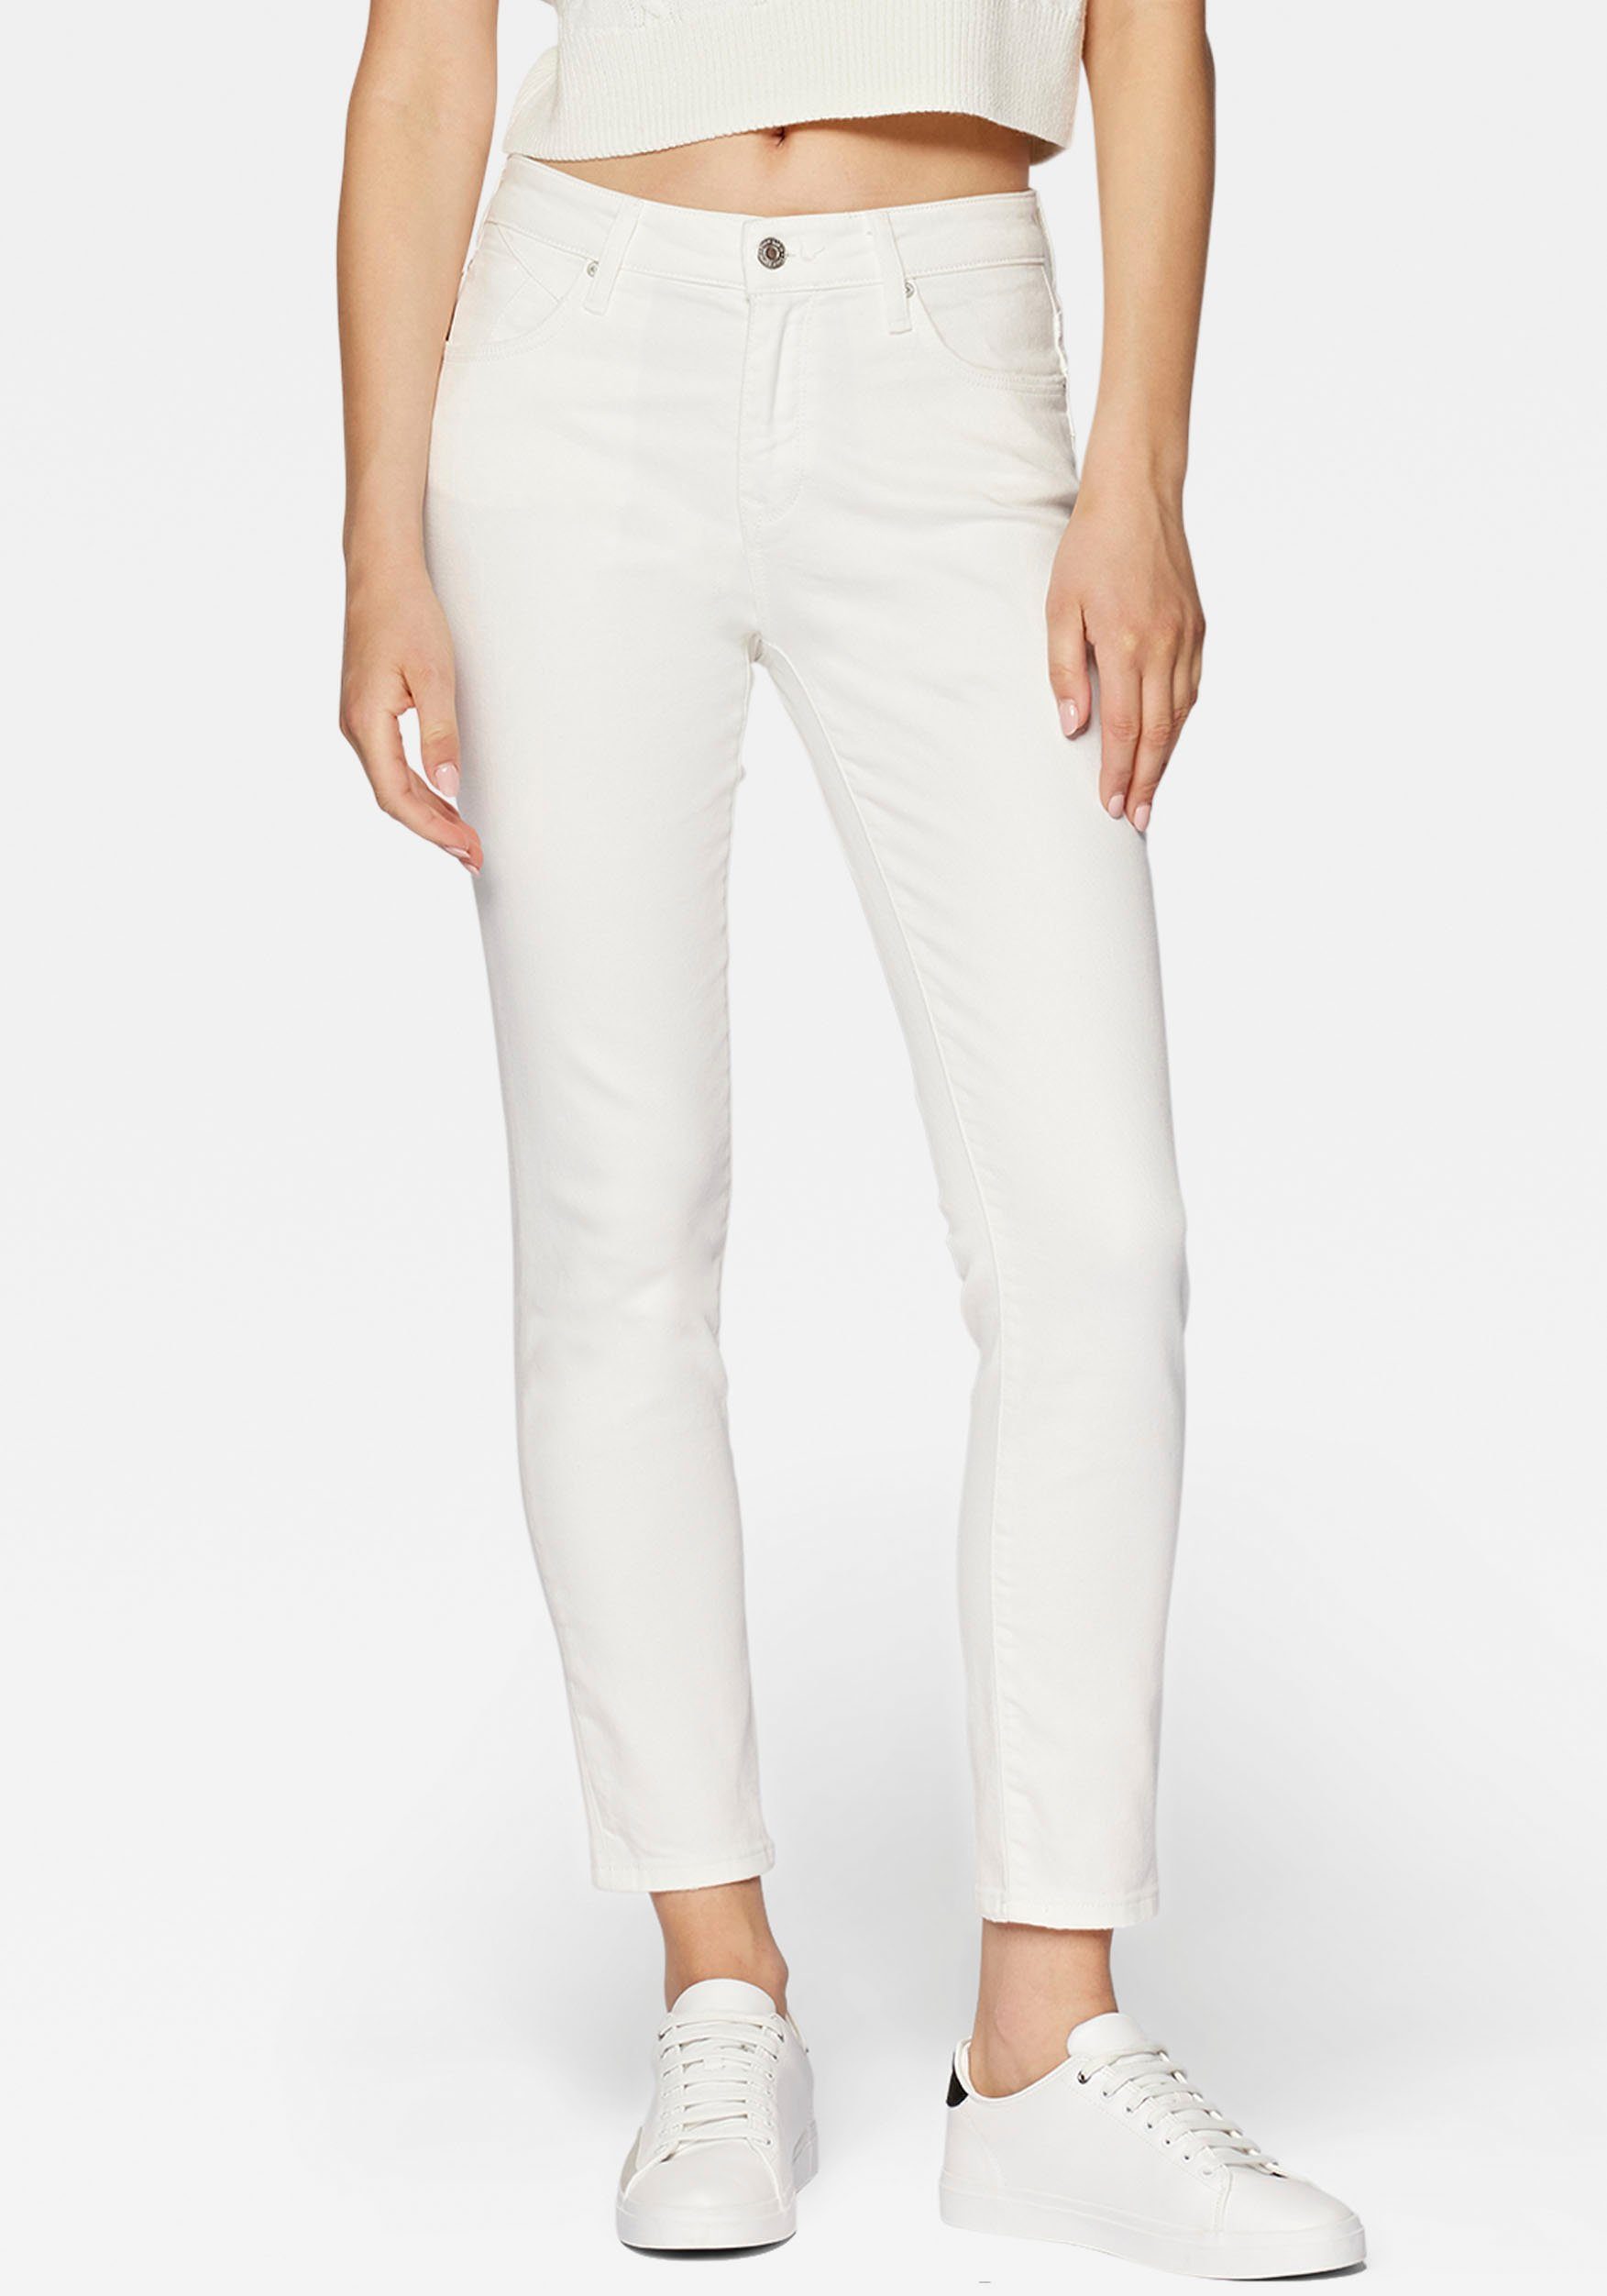 Mavi hochwertiger Verarbeitung dank Slim-fit-Jeans trageangenehmer Stretchdenim white